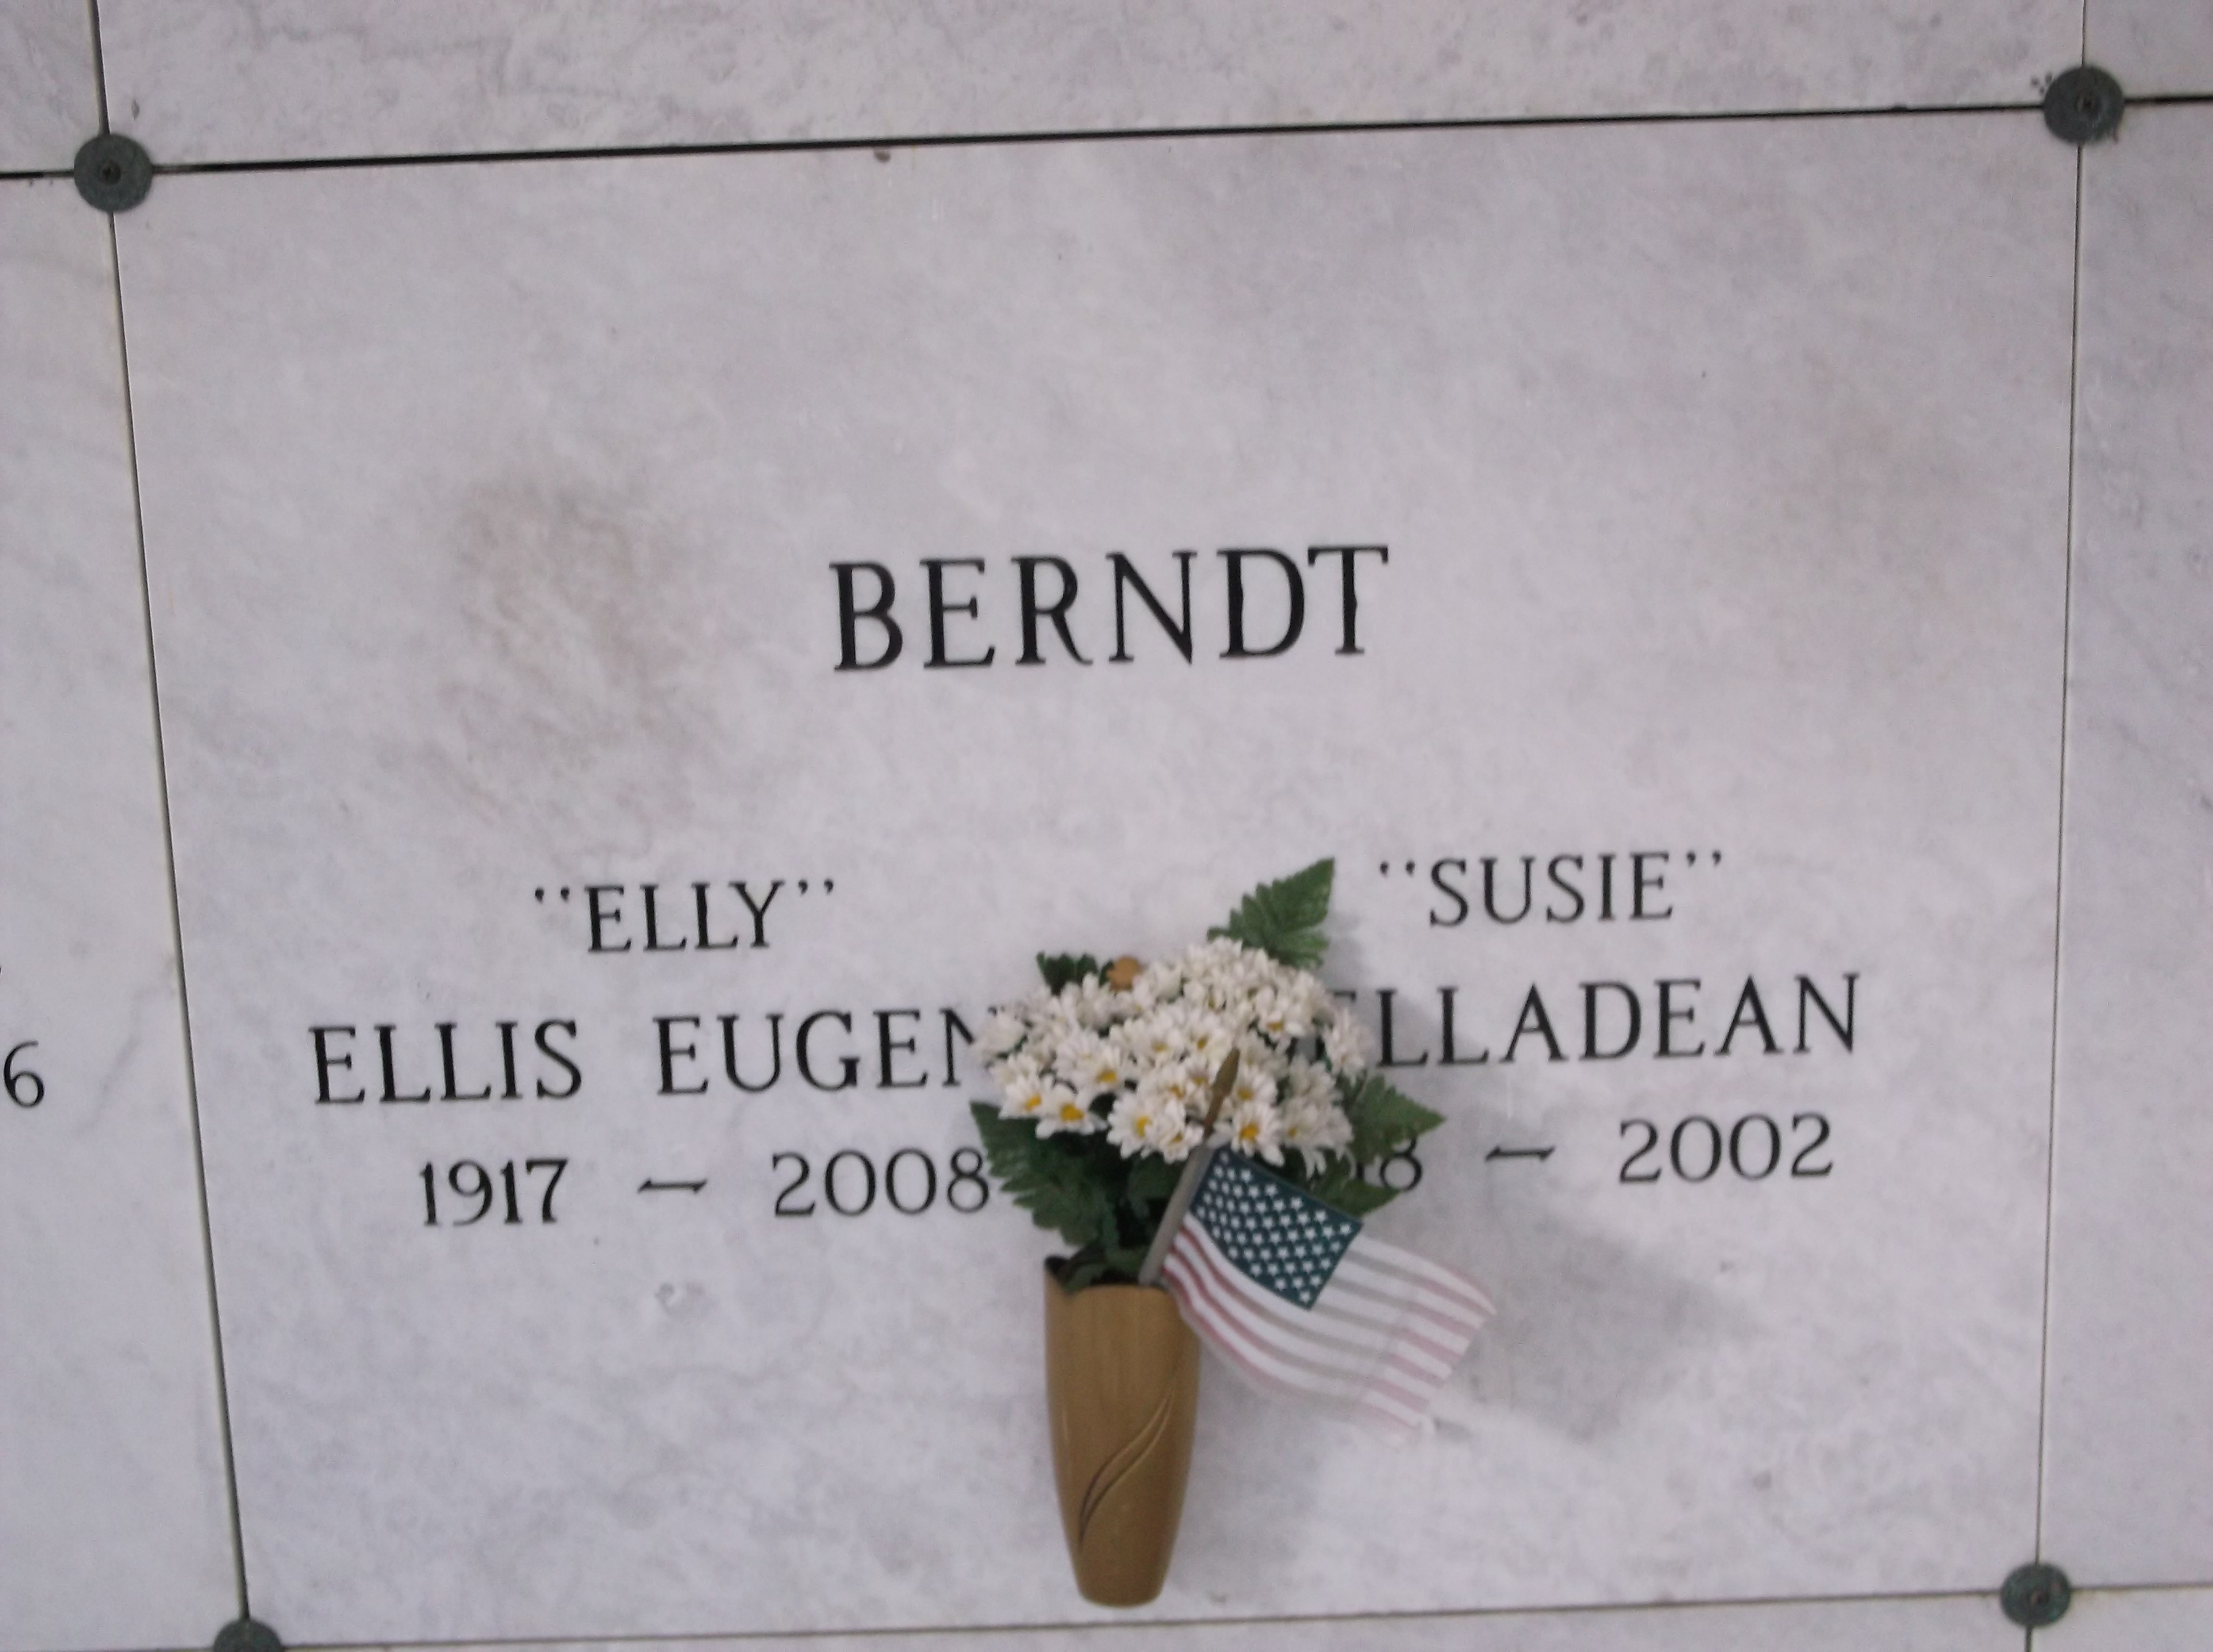 Ellis Eugene "Elly" Berndt